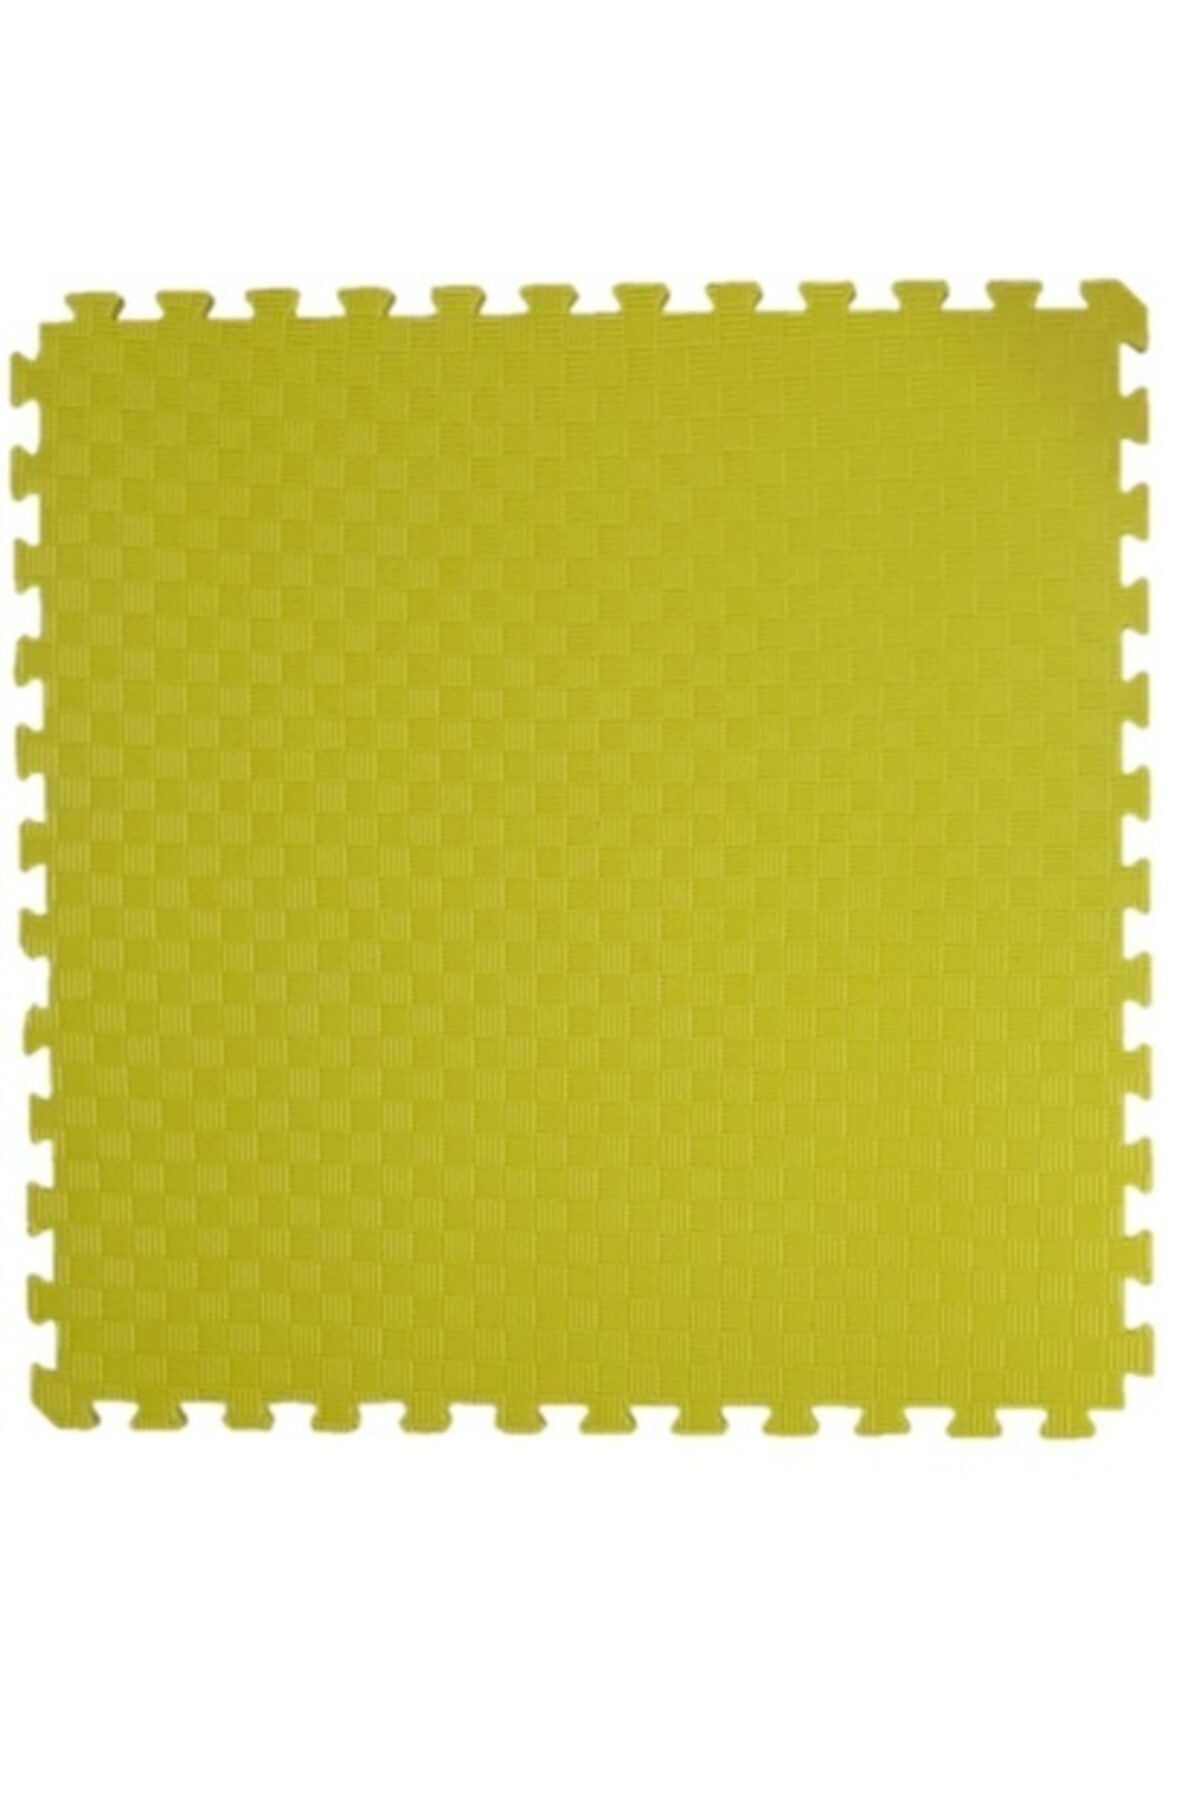 Genel Markalar 100x100 Cm 13 Mm Kalınlığında Iyi Kalite Tatami Yer Minderi Sarı